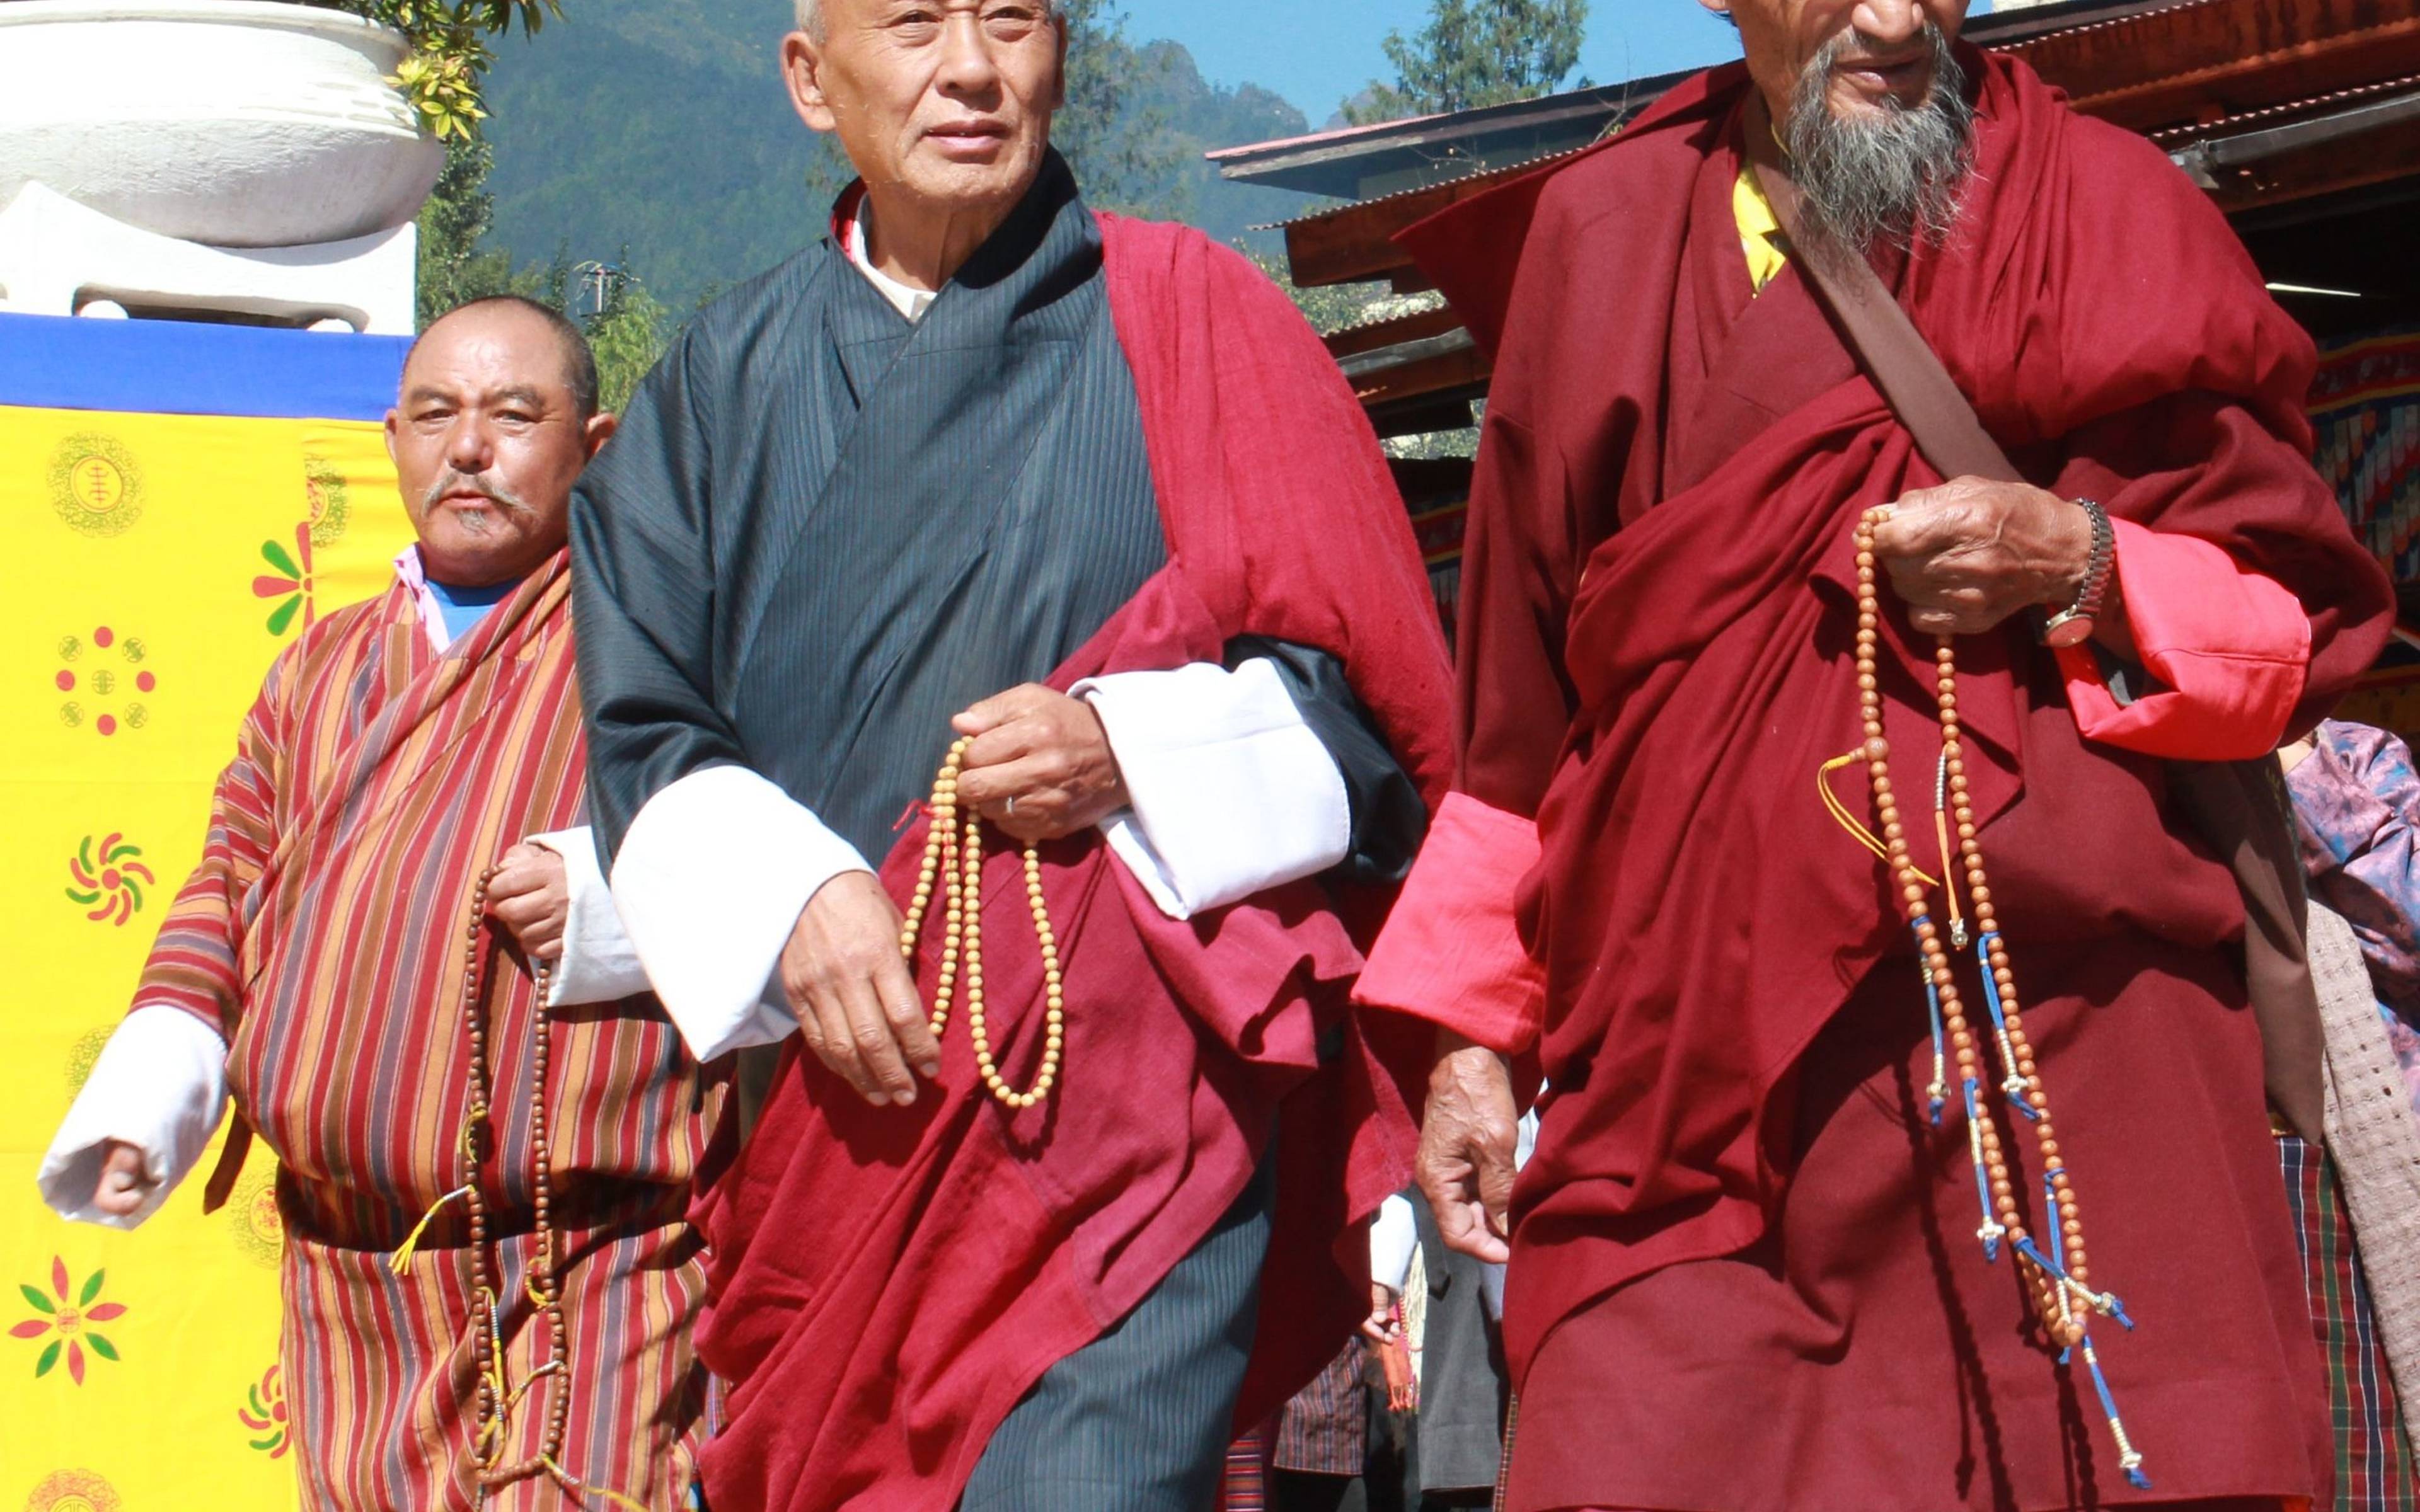 Immersione nella cultura di Thimphu